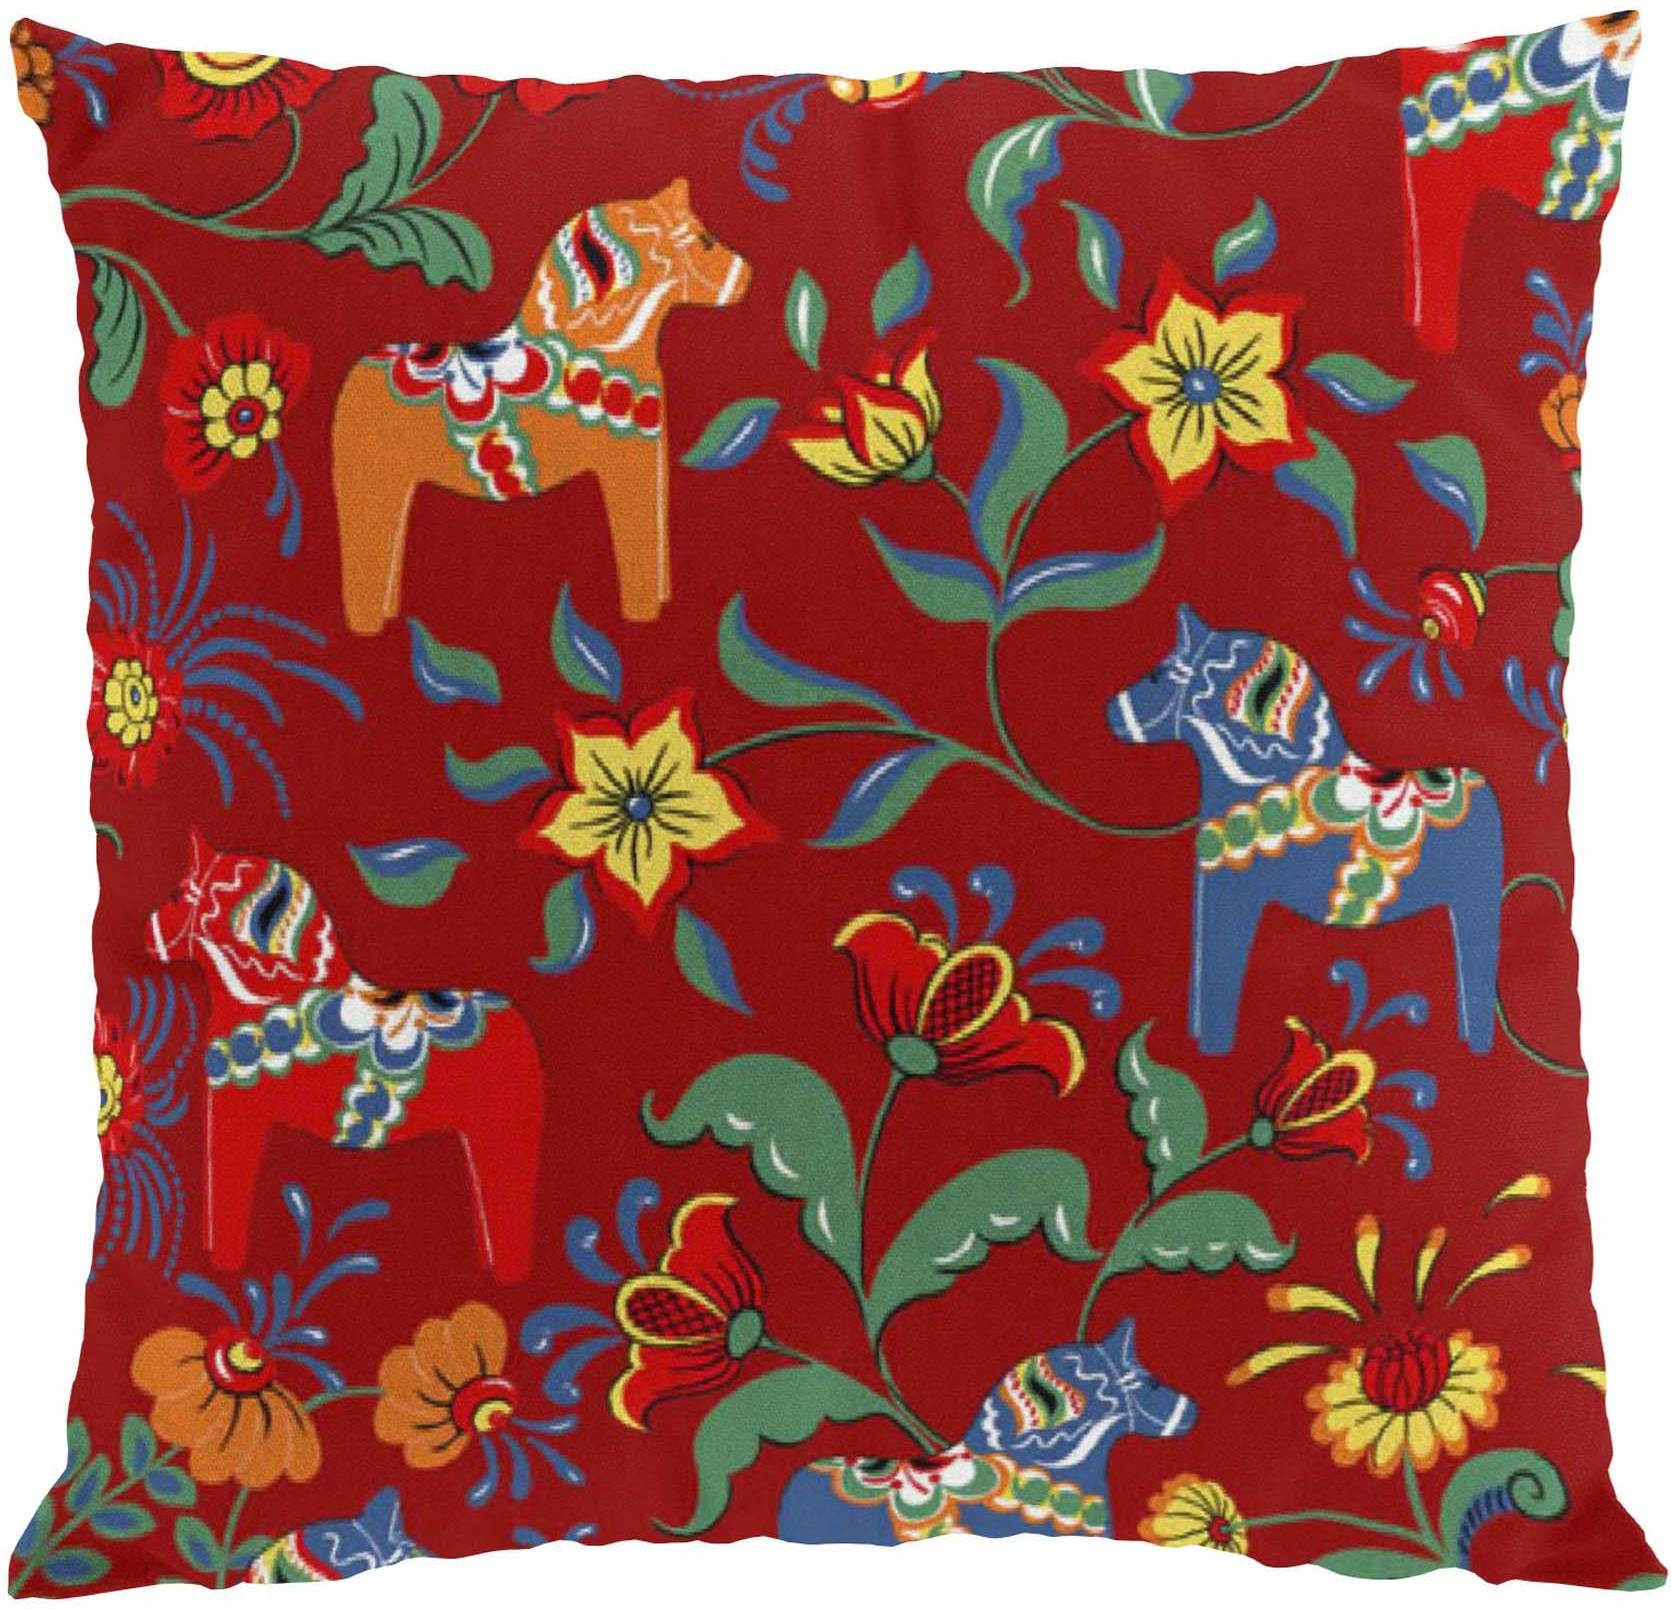  Bild på Arvidssons Textil Leksand Kuddöverdrag Multifärgad, Röd (45x45cm) prydnadskudde